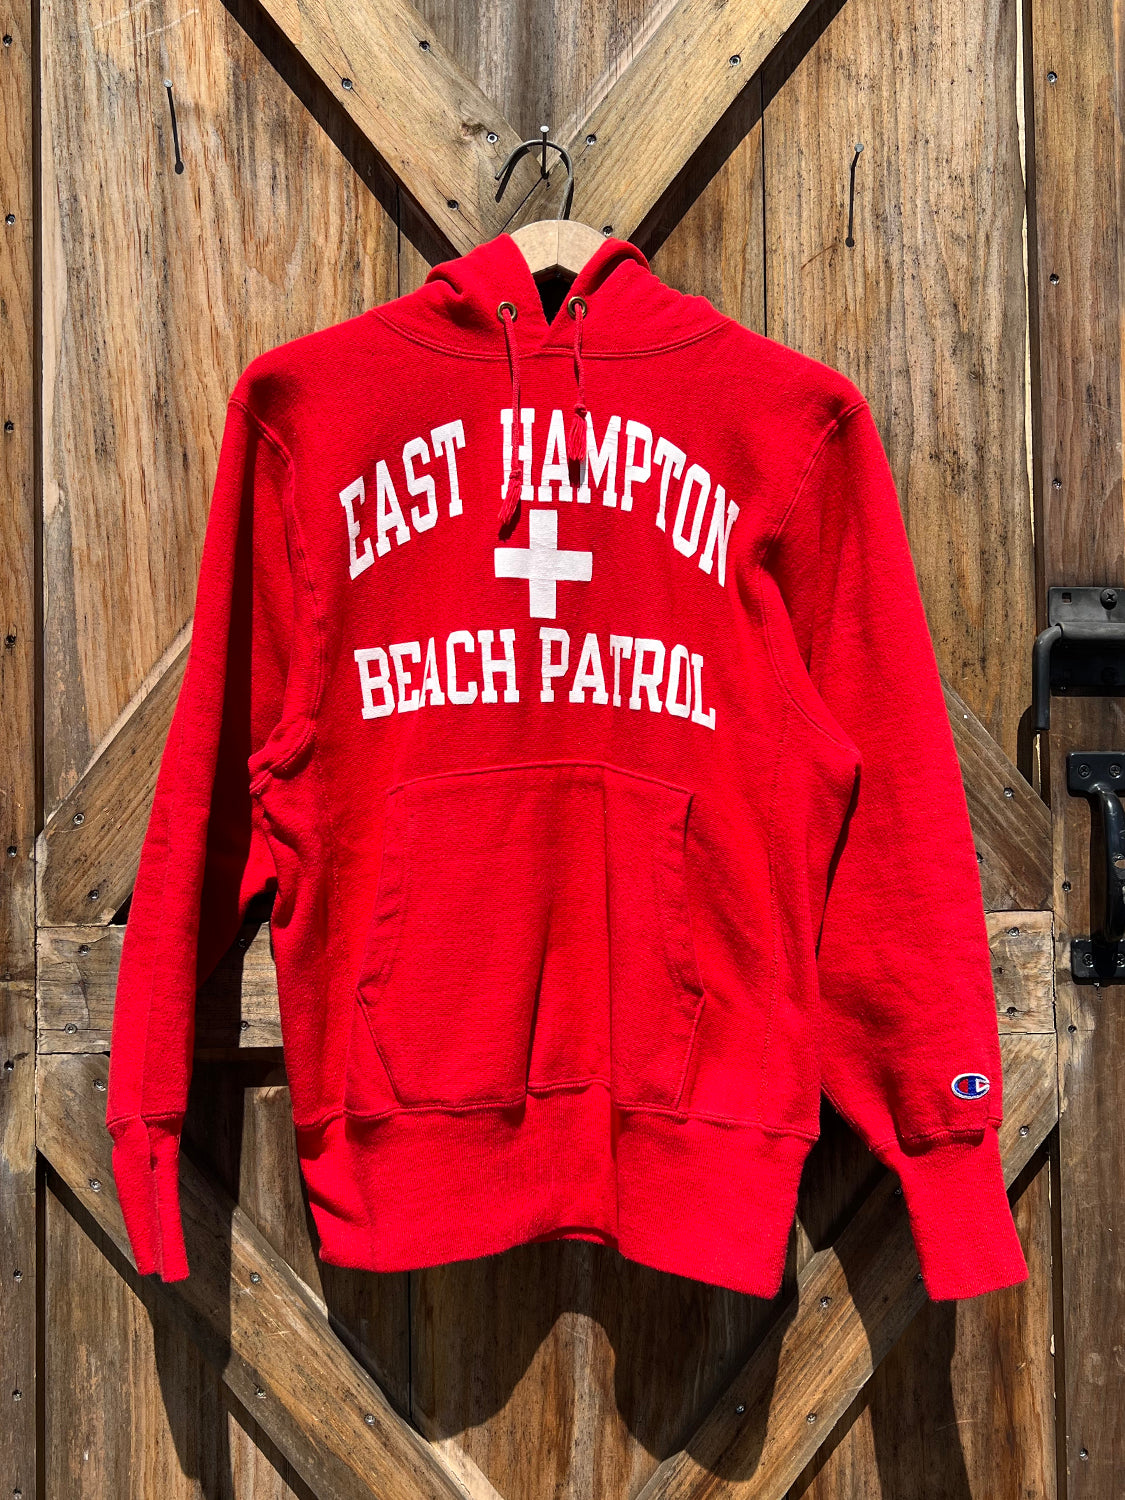 East Hampton Beach Patrol Hoodie - 1990s